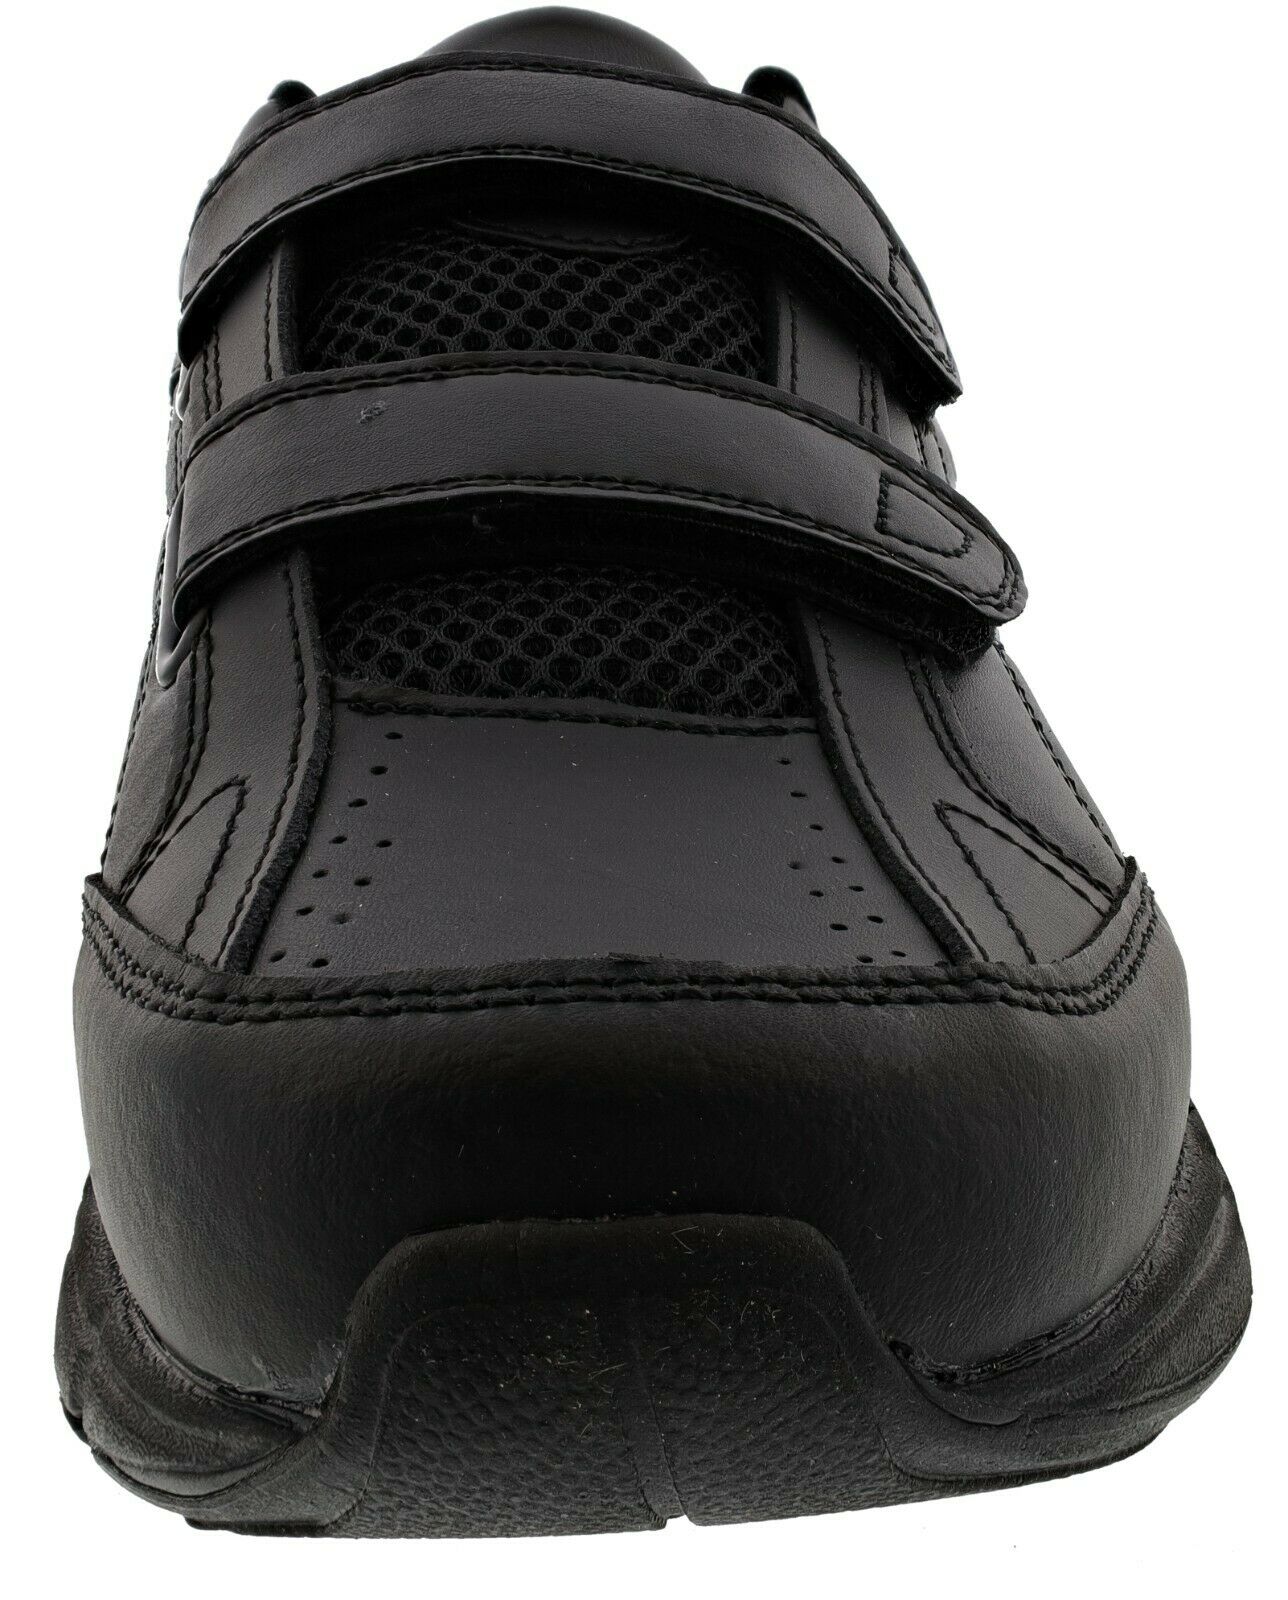 Dr. Scholl's Men's Brisk Sneakers, Wide Width - image 3 of 5